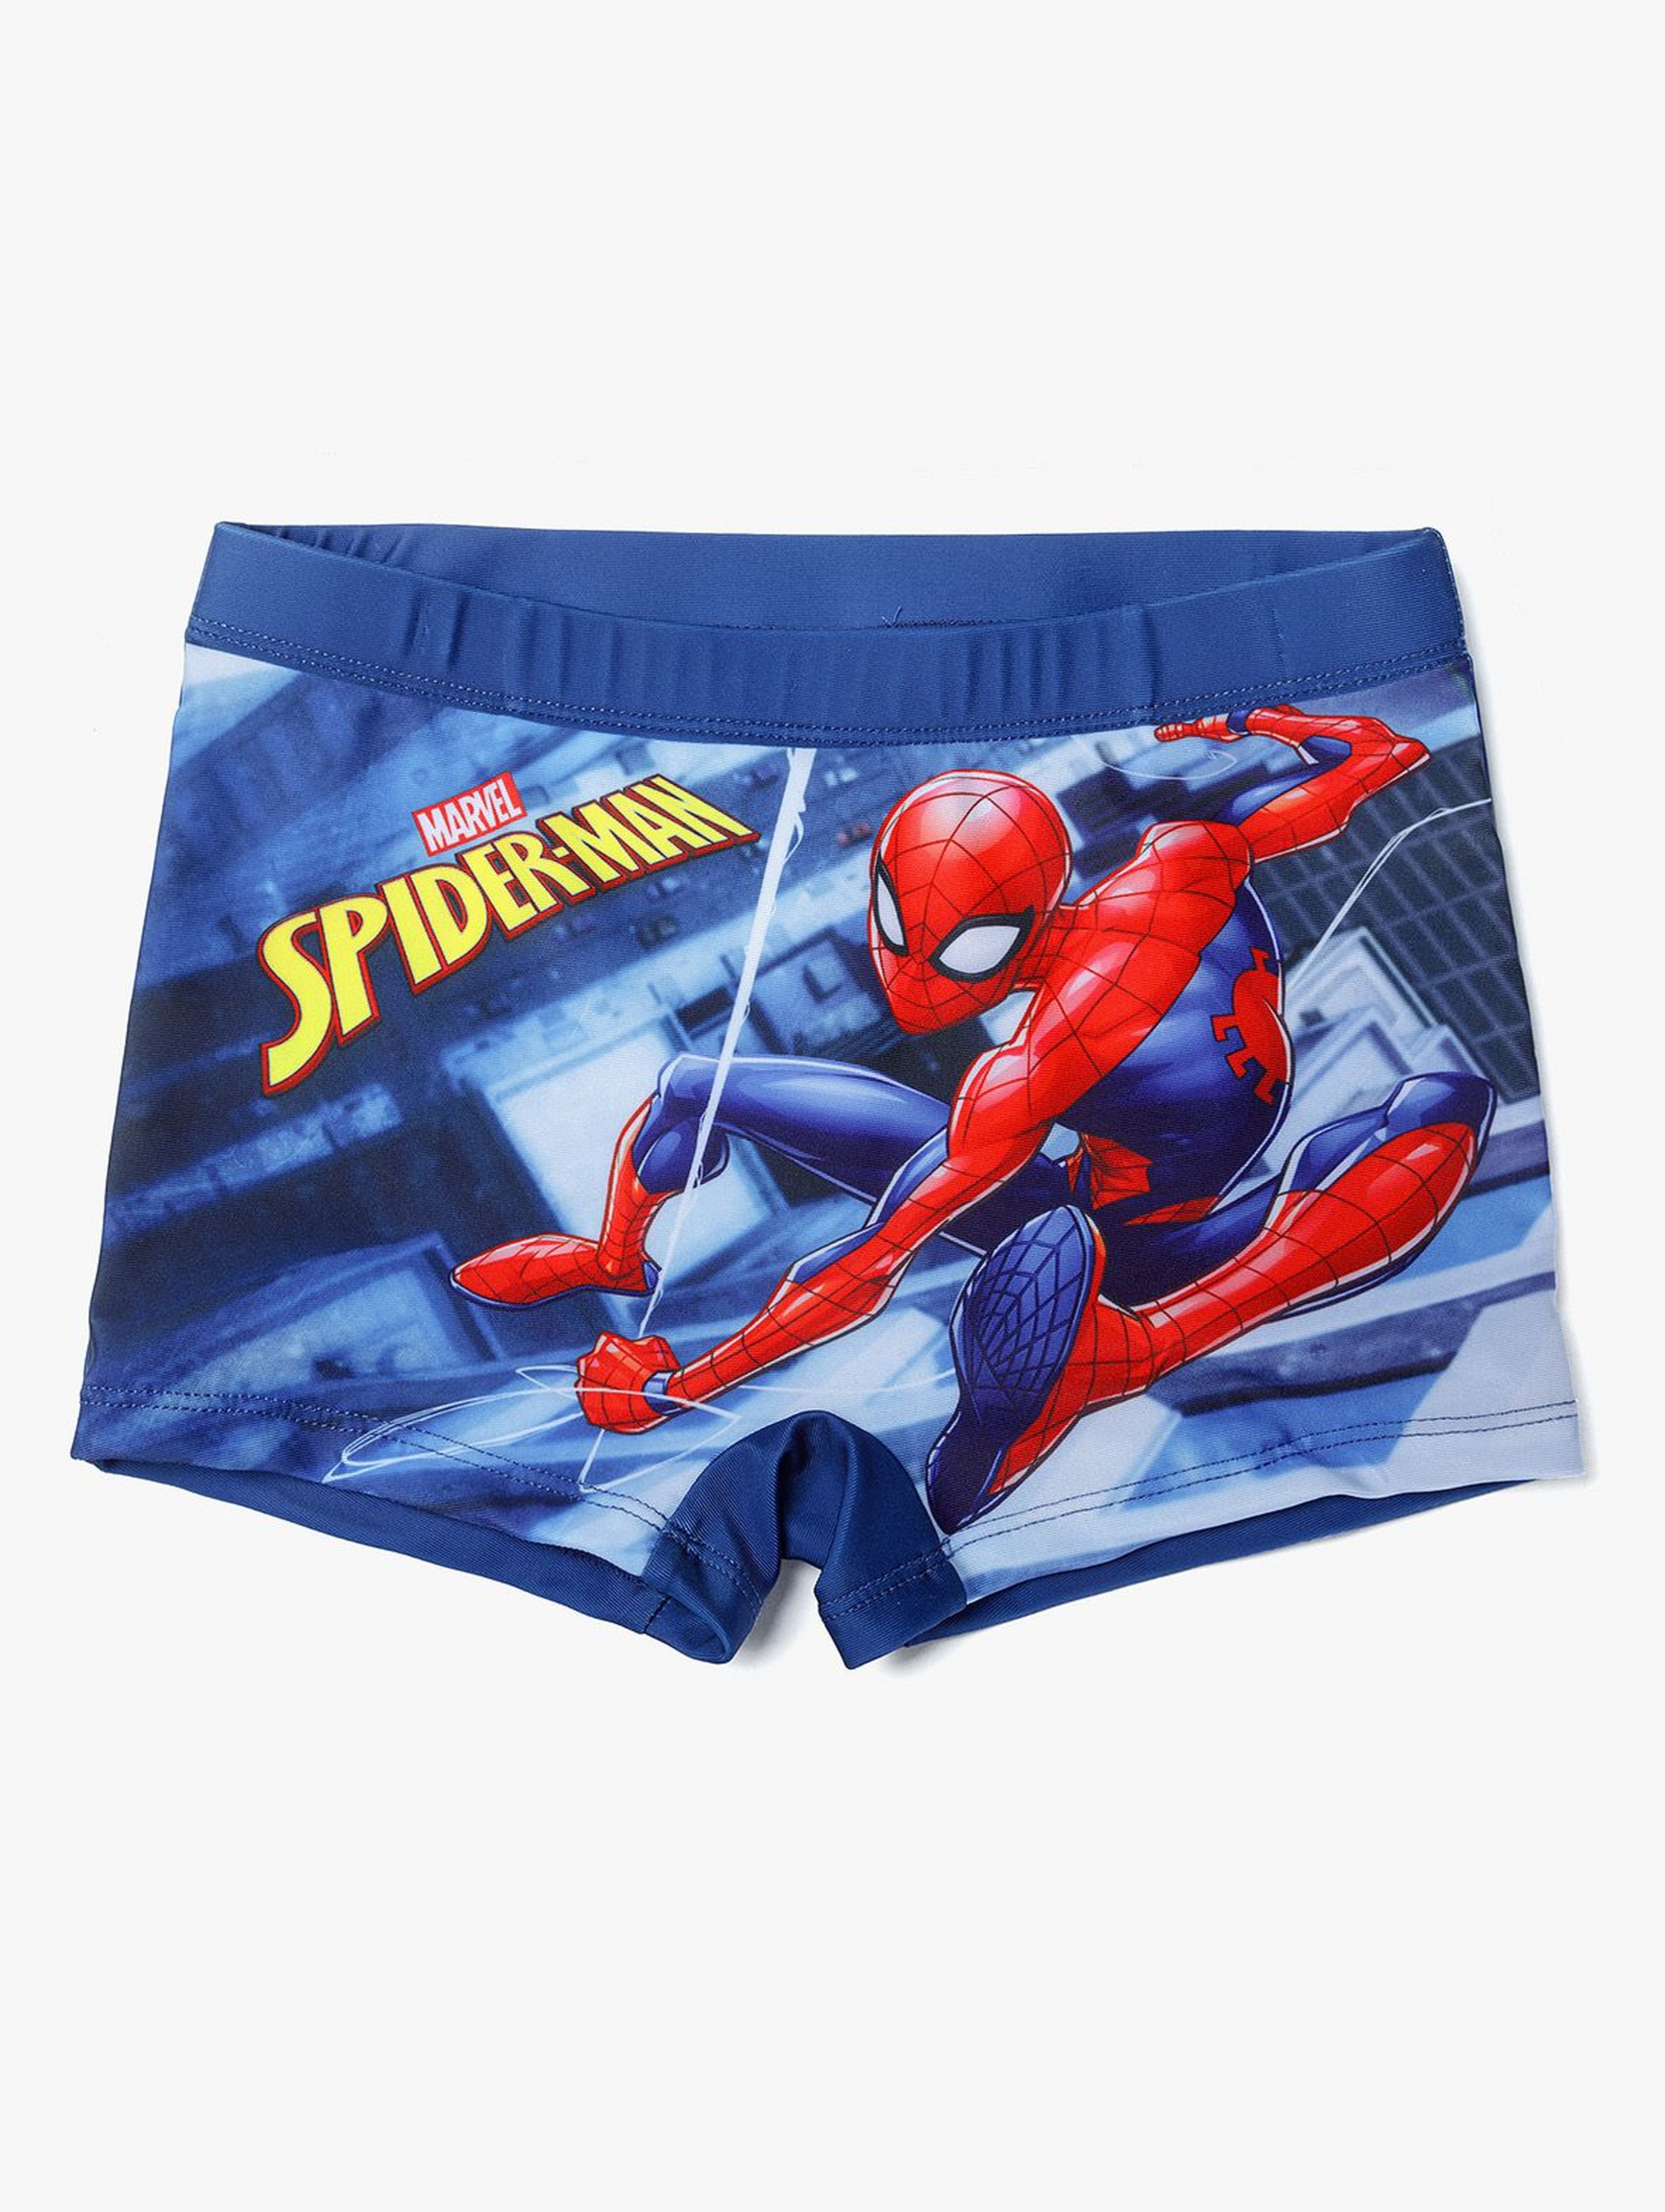 Majtki kąpielowe chłopięce Spiderman  - granatowy